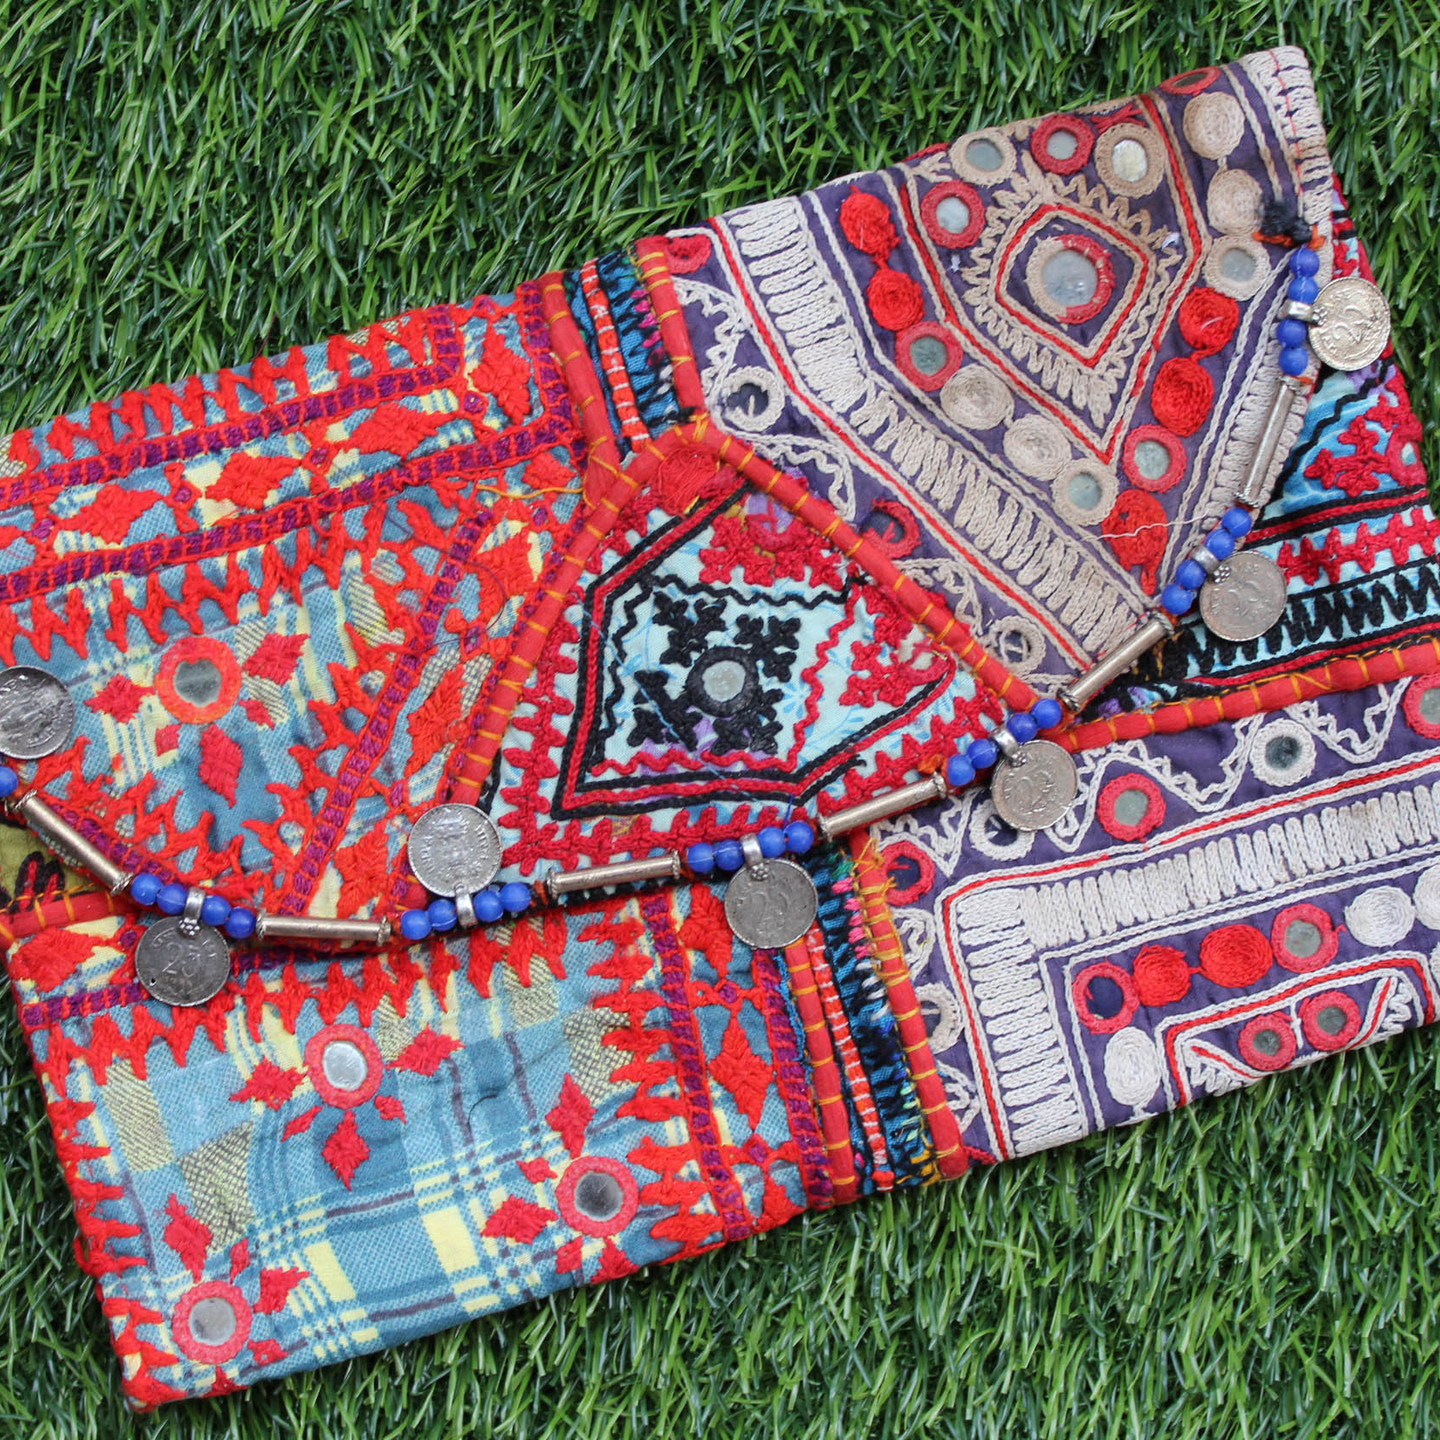 Vintage antique Boho Indian ethnic Banjara clutch bagsling bag